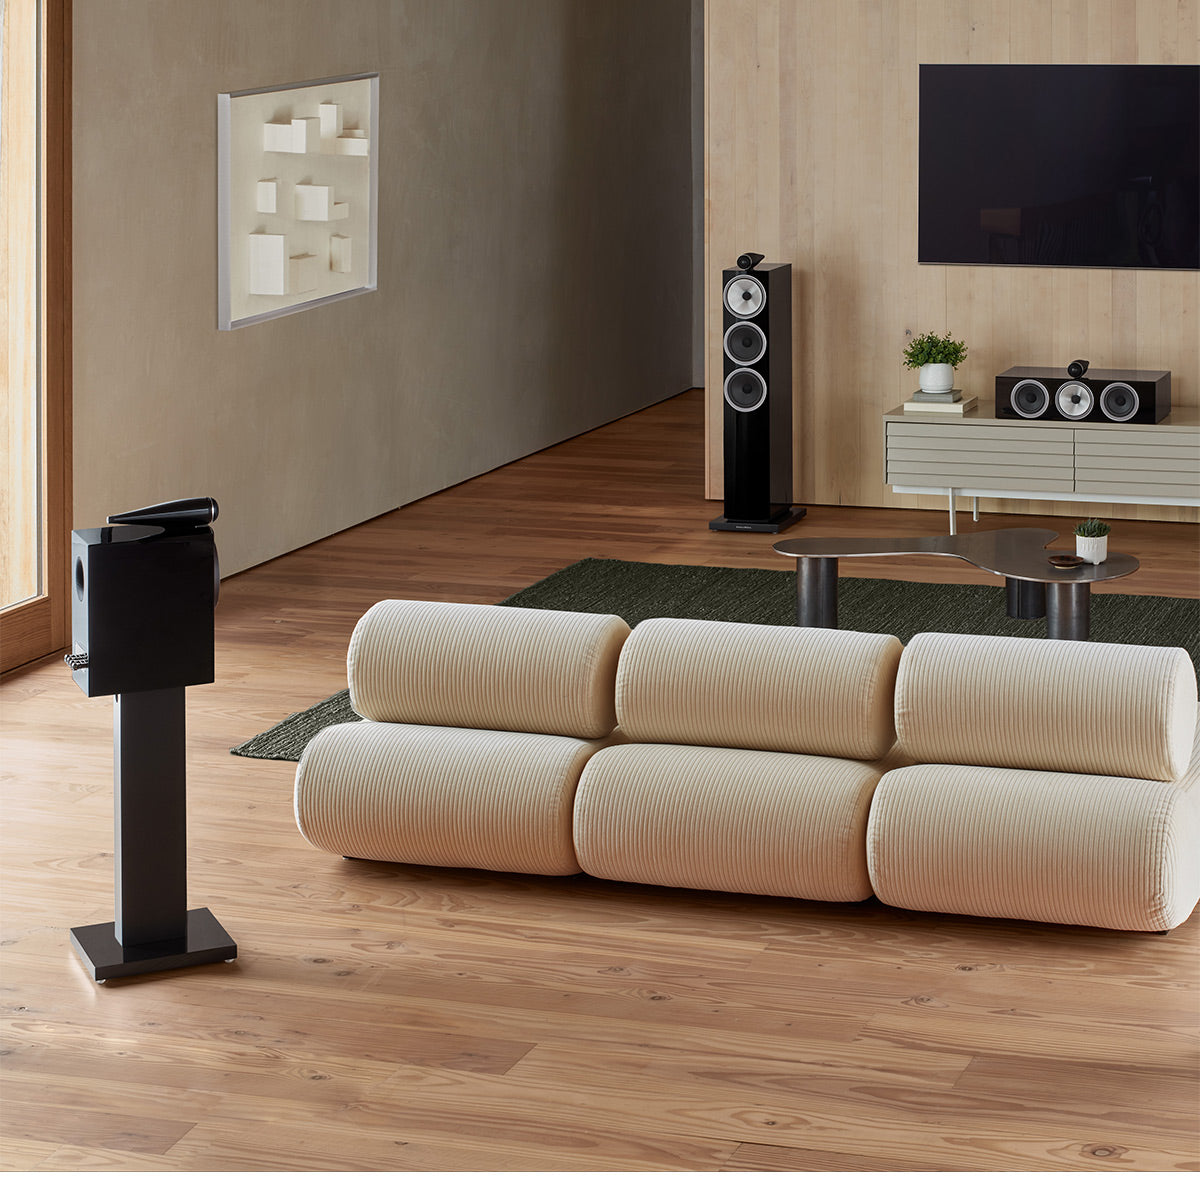 Bowers & Wilkins 703 S3 3-Way Floorstanding Speaker - Each (Gloss Black)